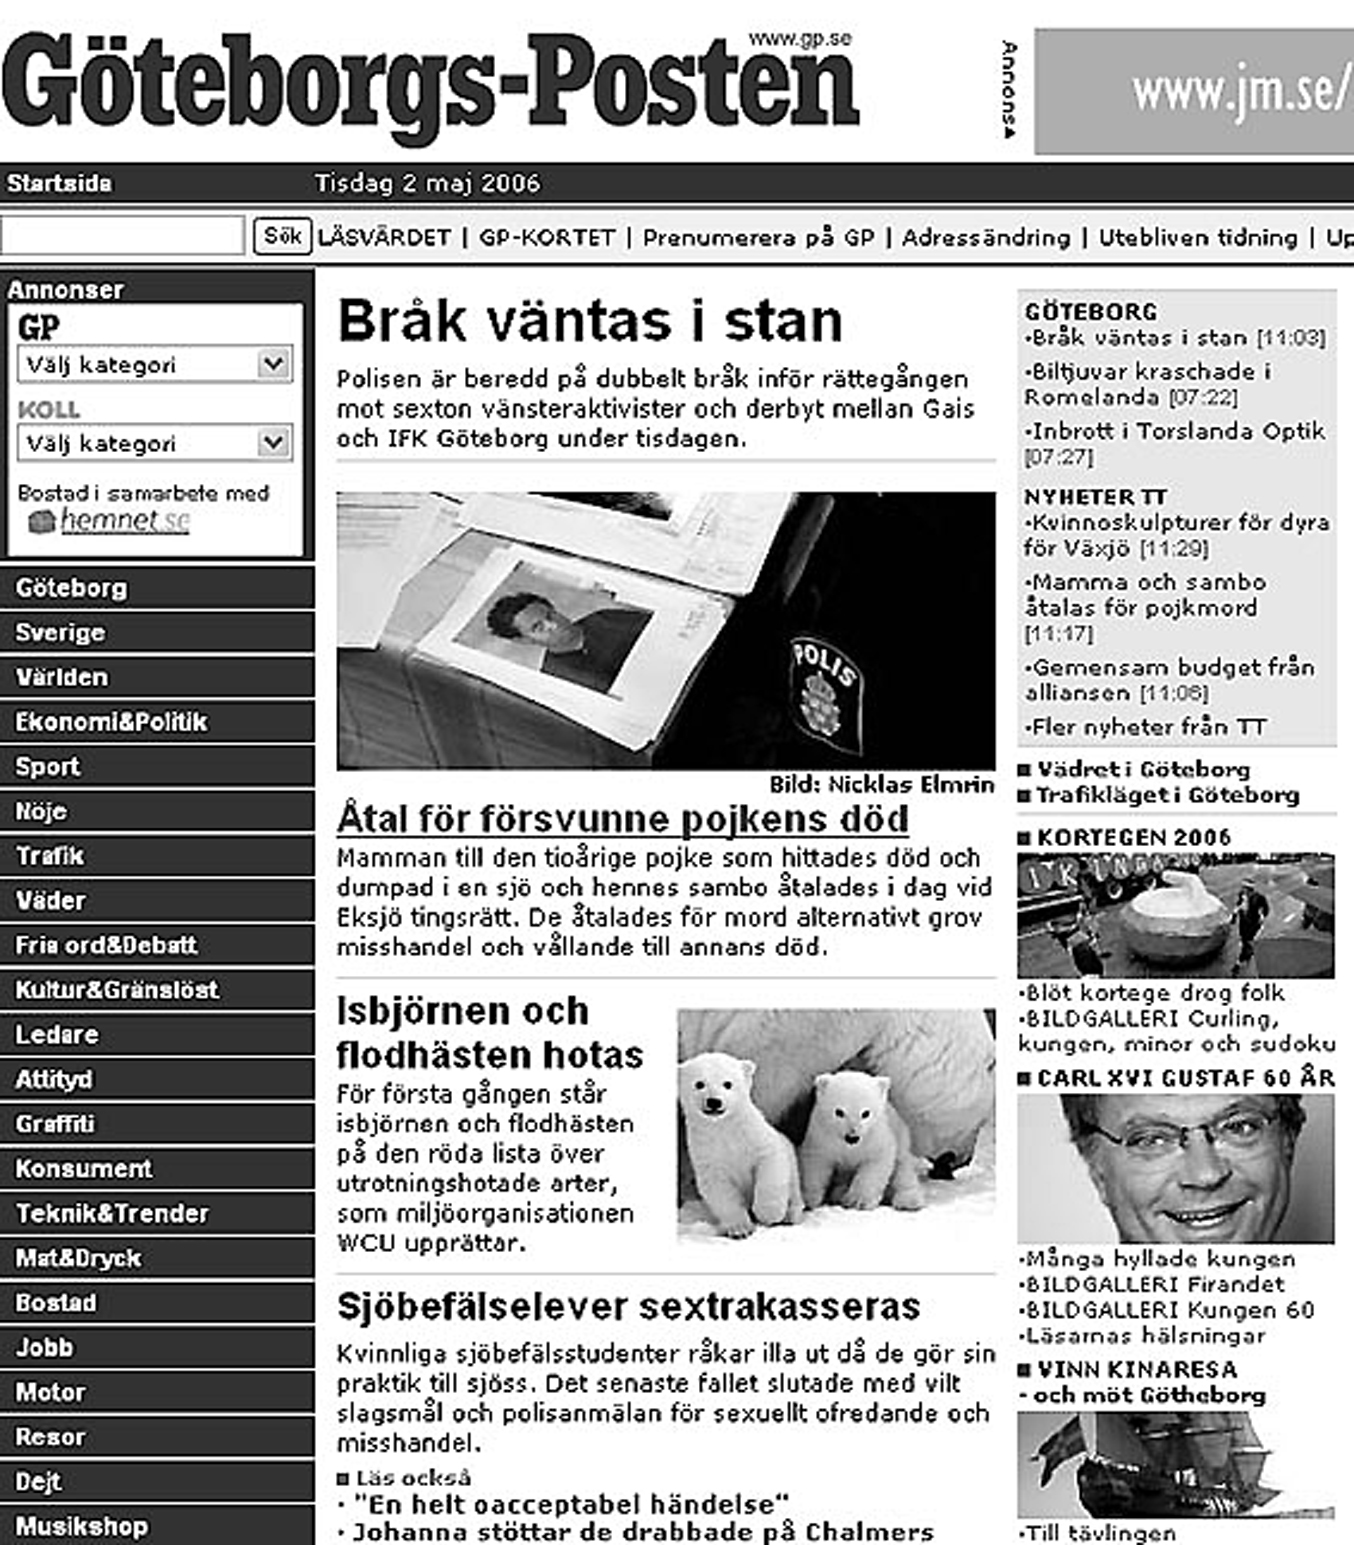 Bilagor Bild II (a och b) Polisens kontinuerliga nyhetsrapportering. Västra Götalandspolisens informatörer publicerar fortlöpande korta polisnotiser på polisens hemsida.